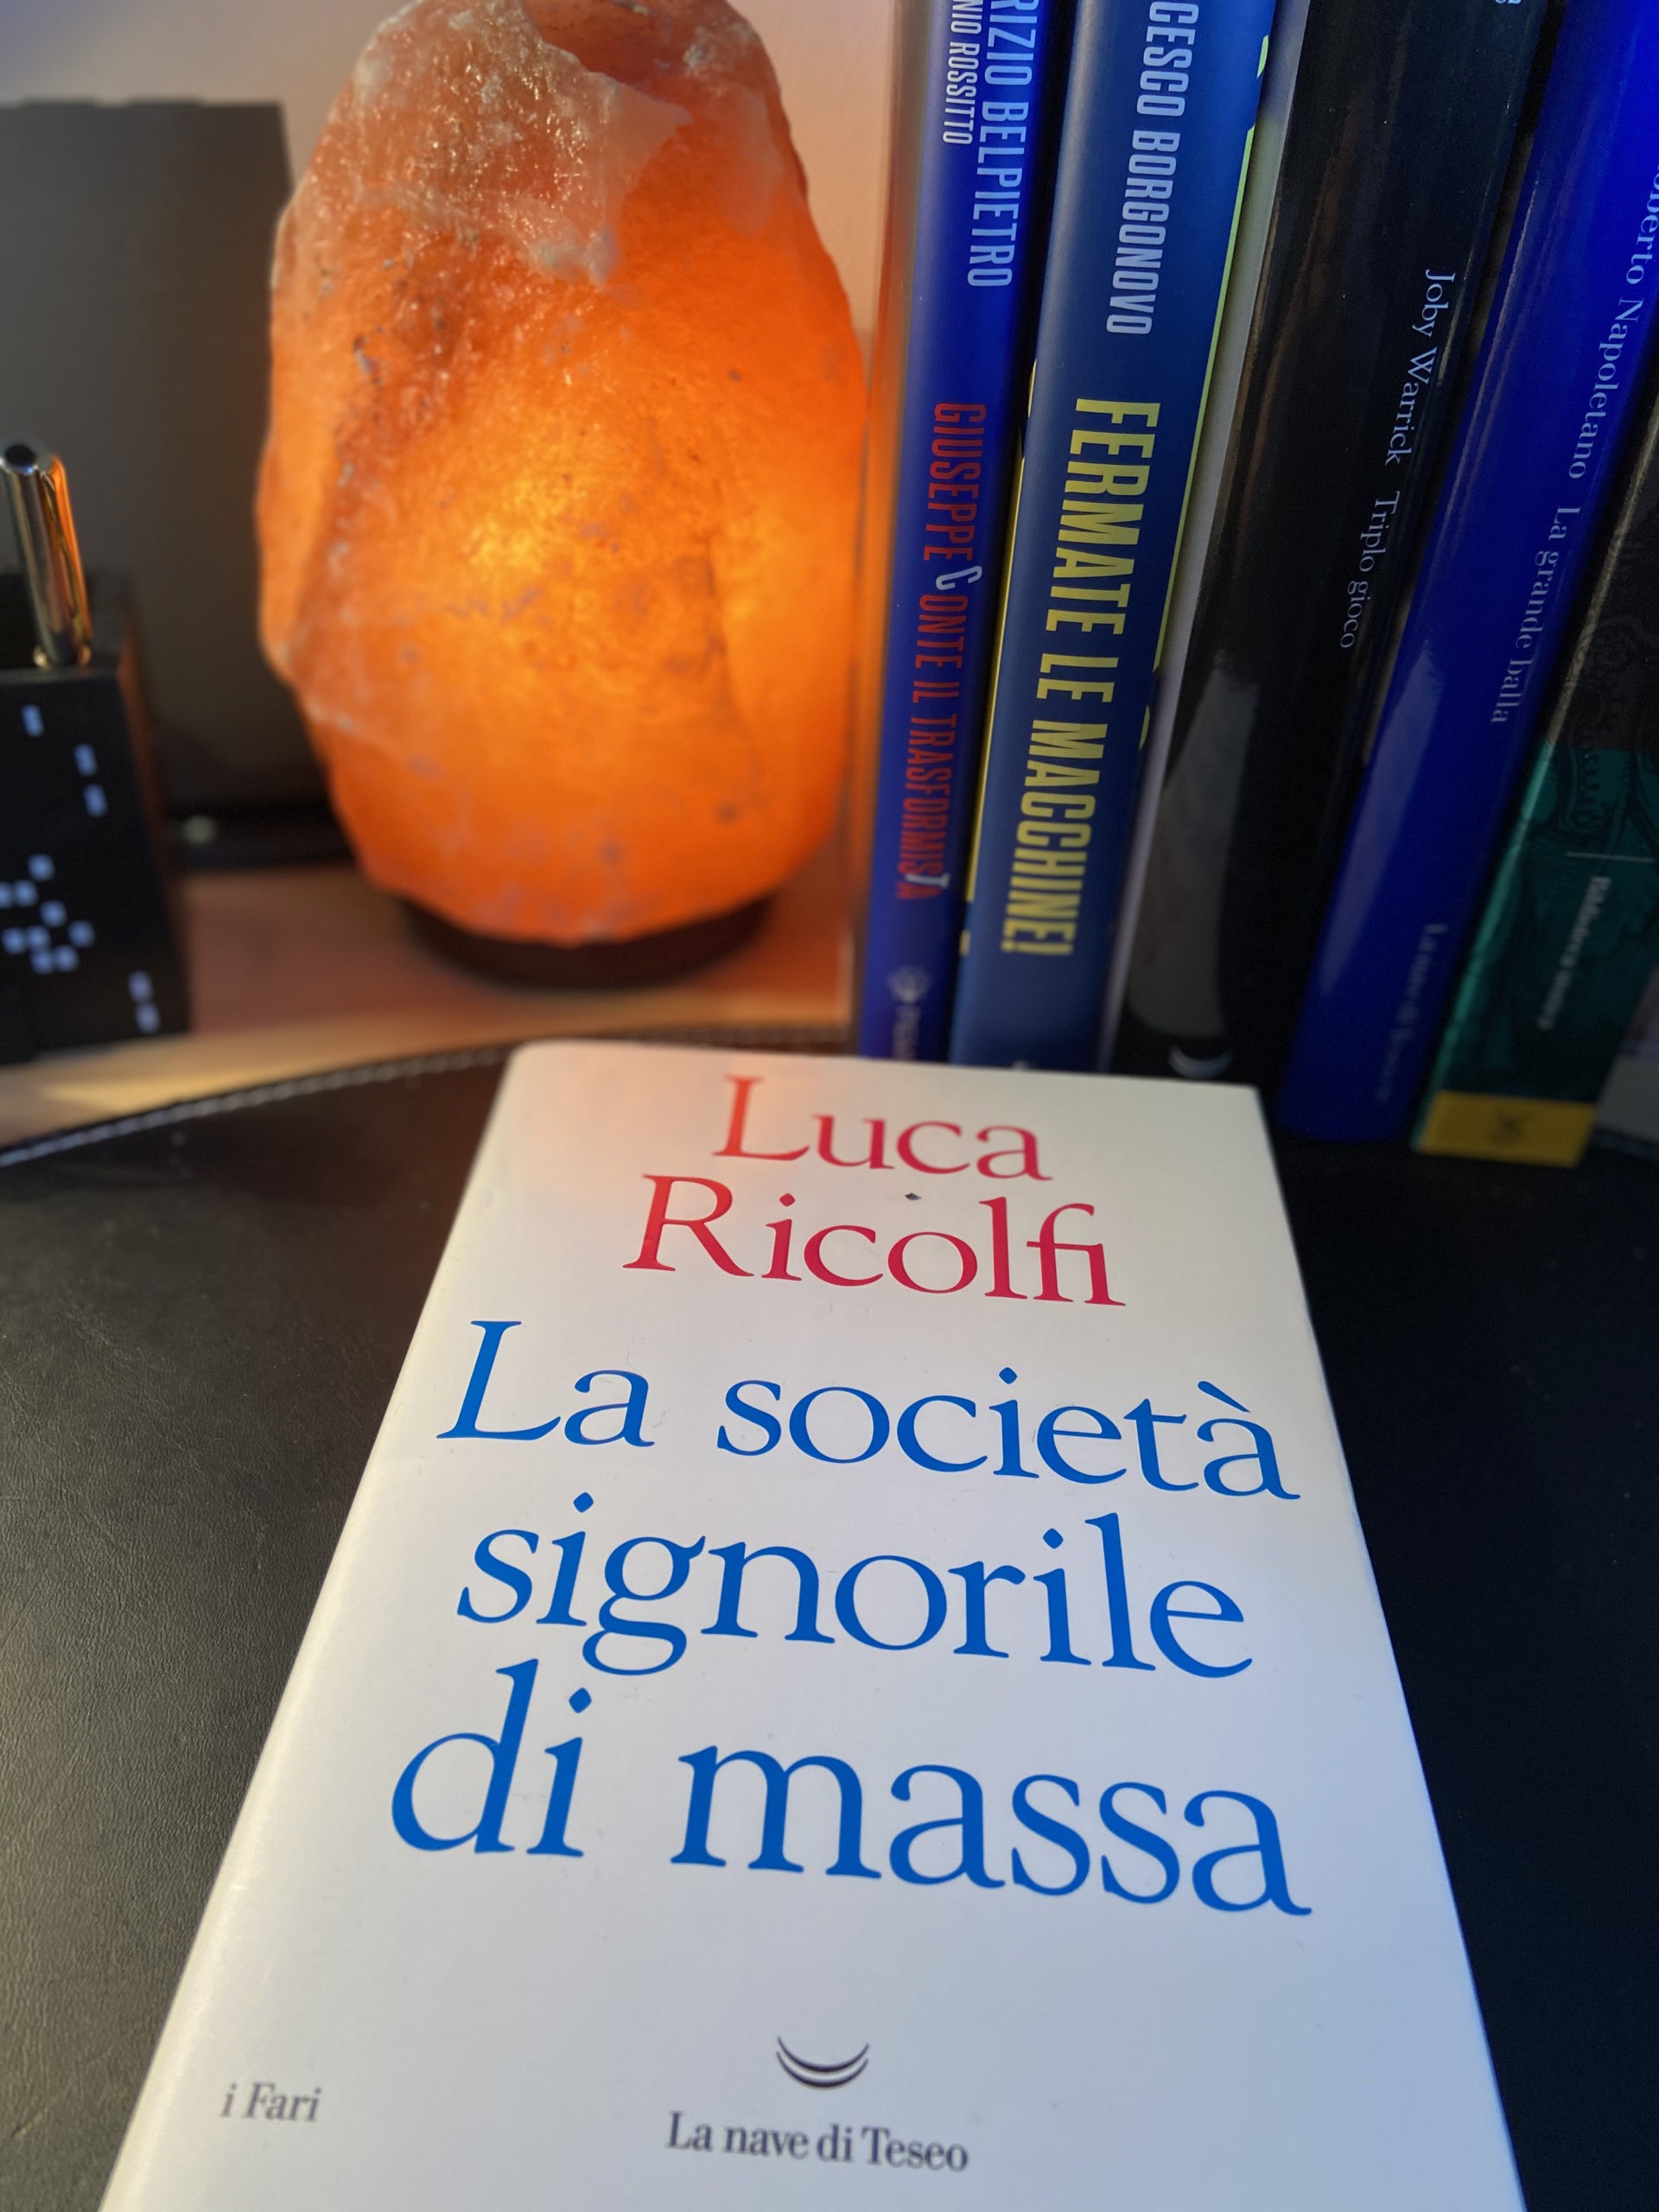 La società signorile di massa: dialogo con Luca Ricolfi